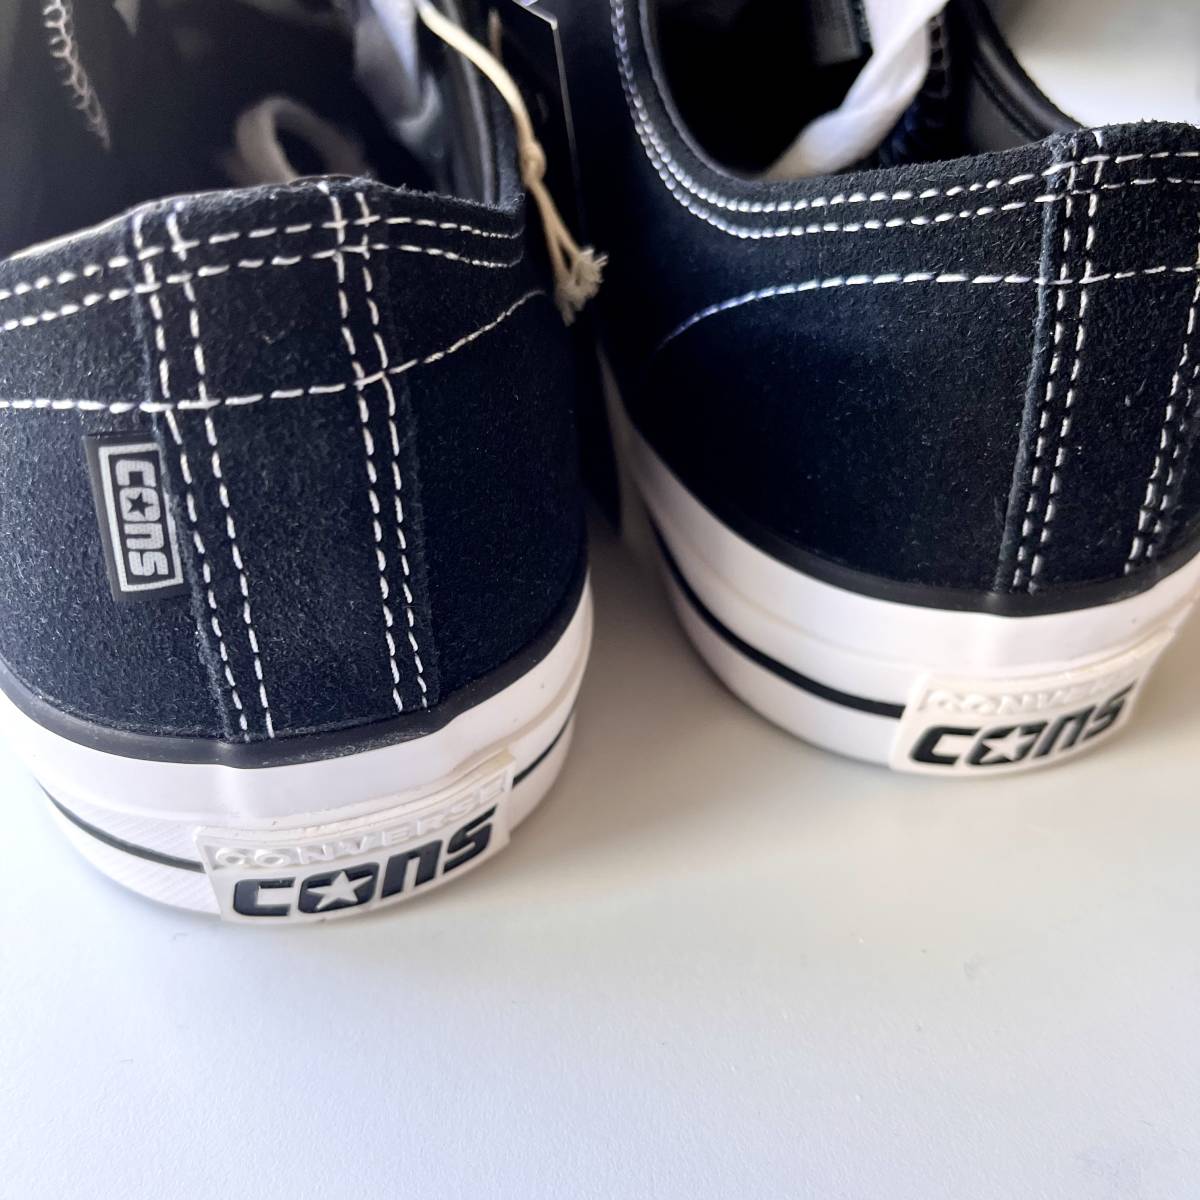 【送料無料】US9 27.5cm CONS CTAS Pro Suede Black/Black/White CONVERSE - CHUCK 70 OX コンバース コンズ Skateの画像2